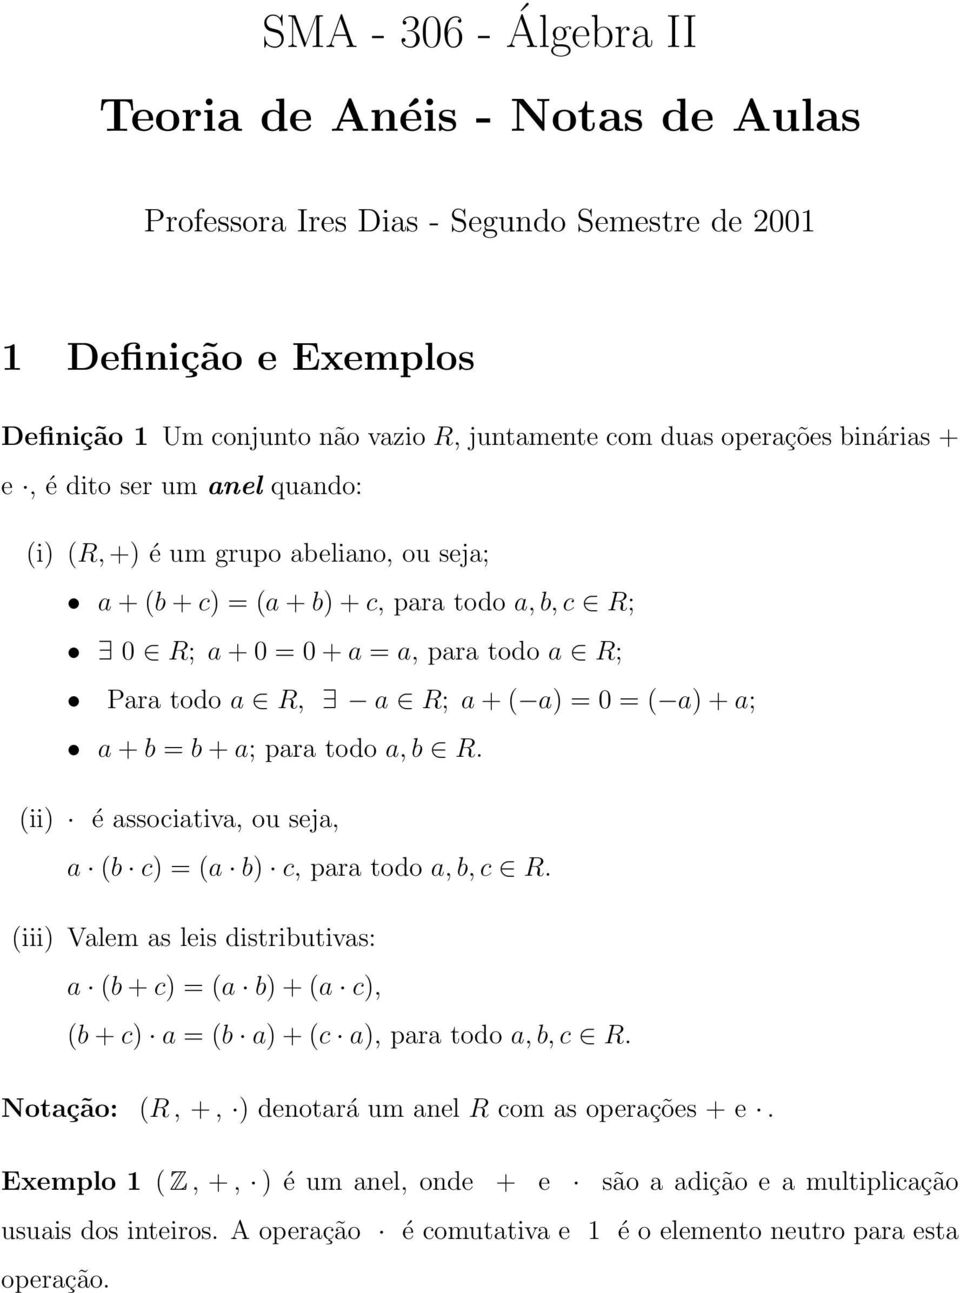 SMA Álgebra II Teoria de Anéis - Notas de Aulas - PDF Free Download